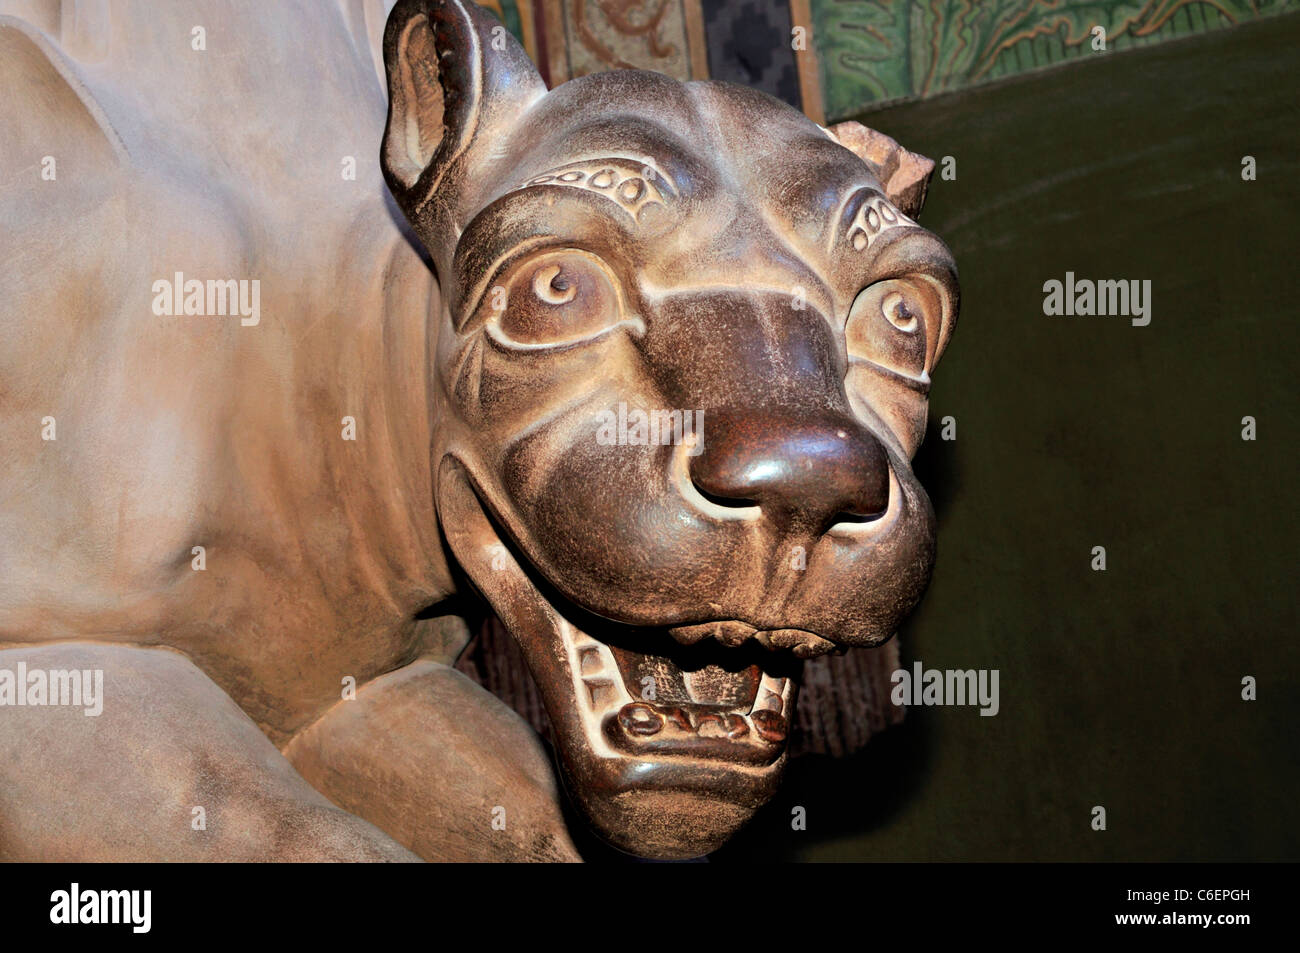 Germany, Eisenach: Mythological animal at the Palas of Wartburg Castle Stock Photo